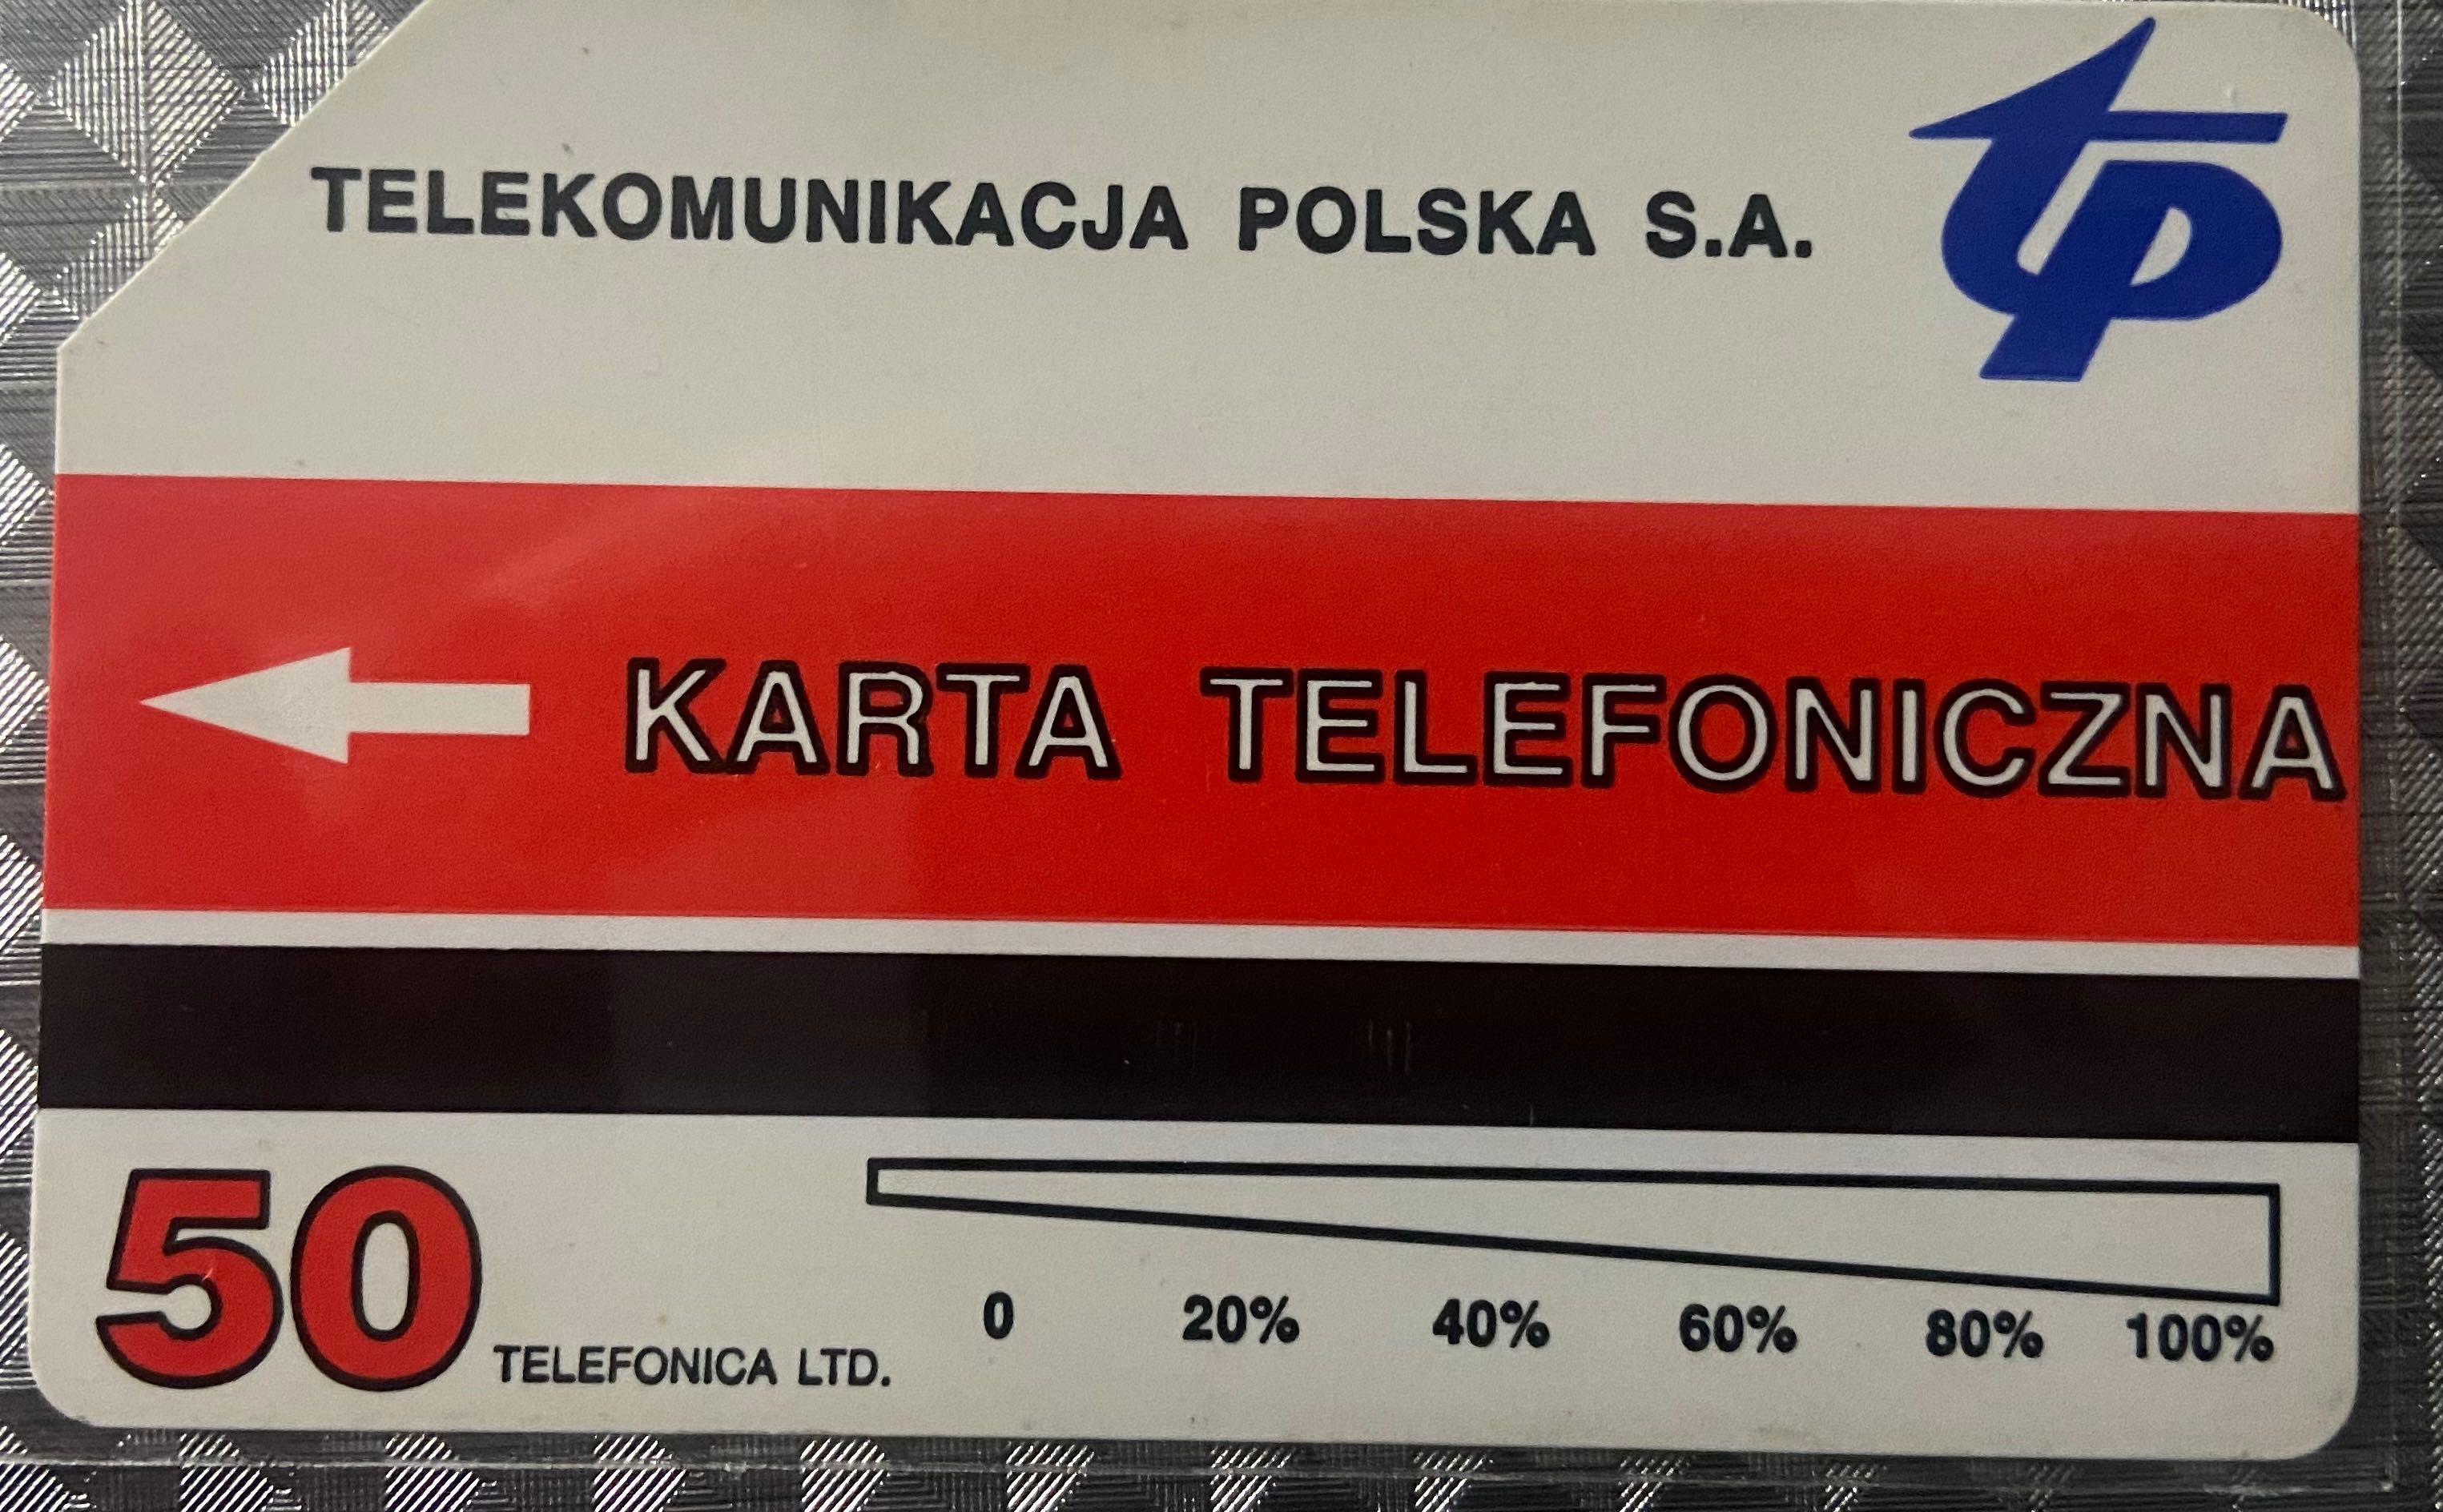 Karta telefoniczna nr 111 - I Toruński zlot samochodów Amerykanskich